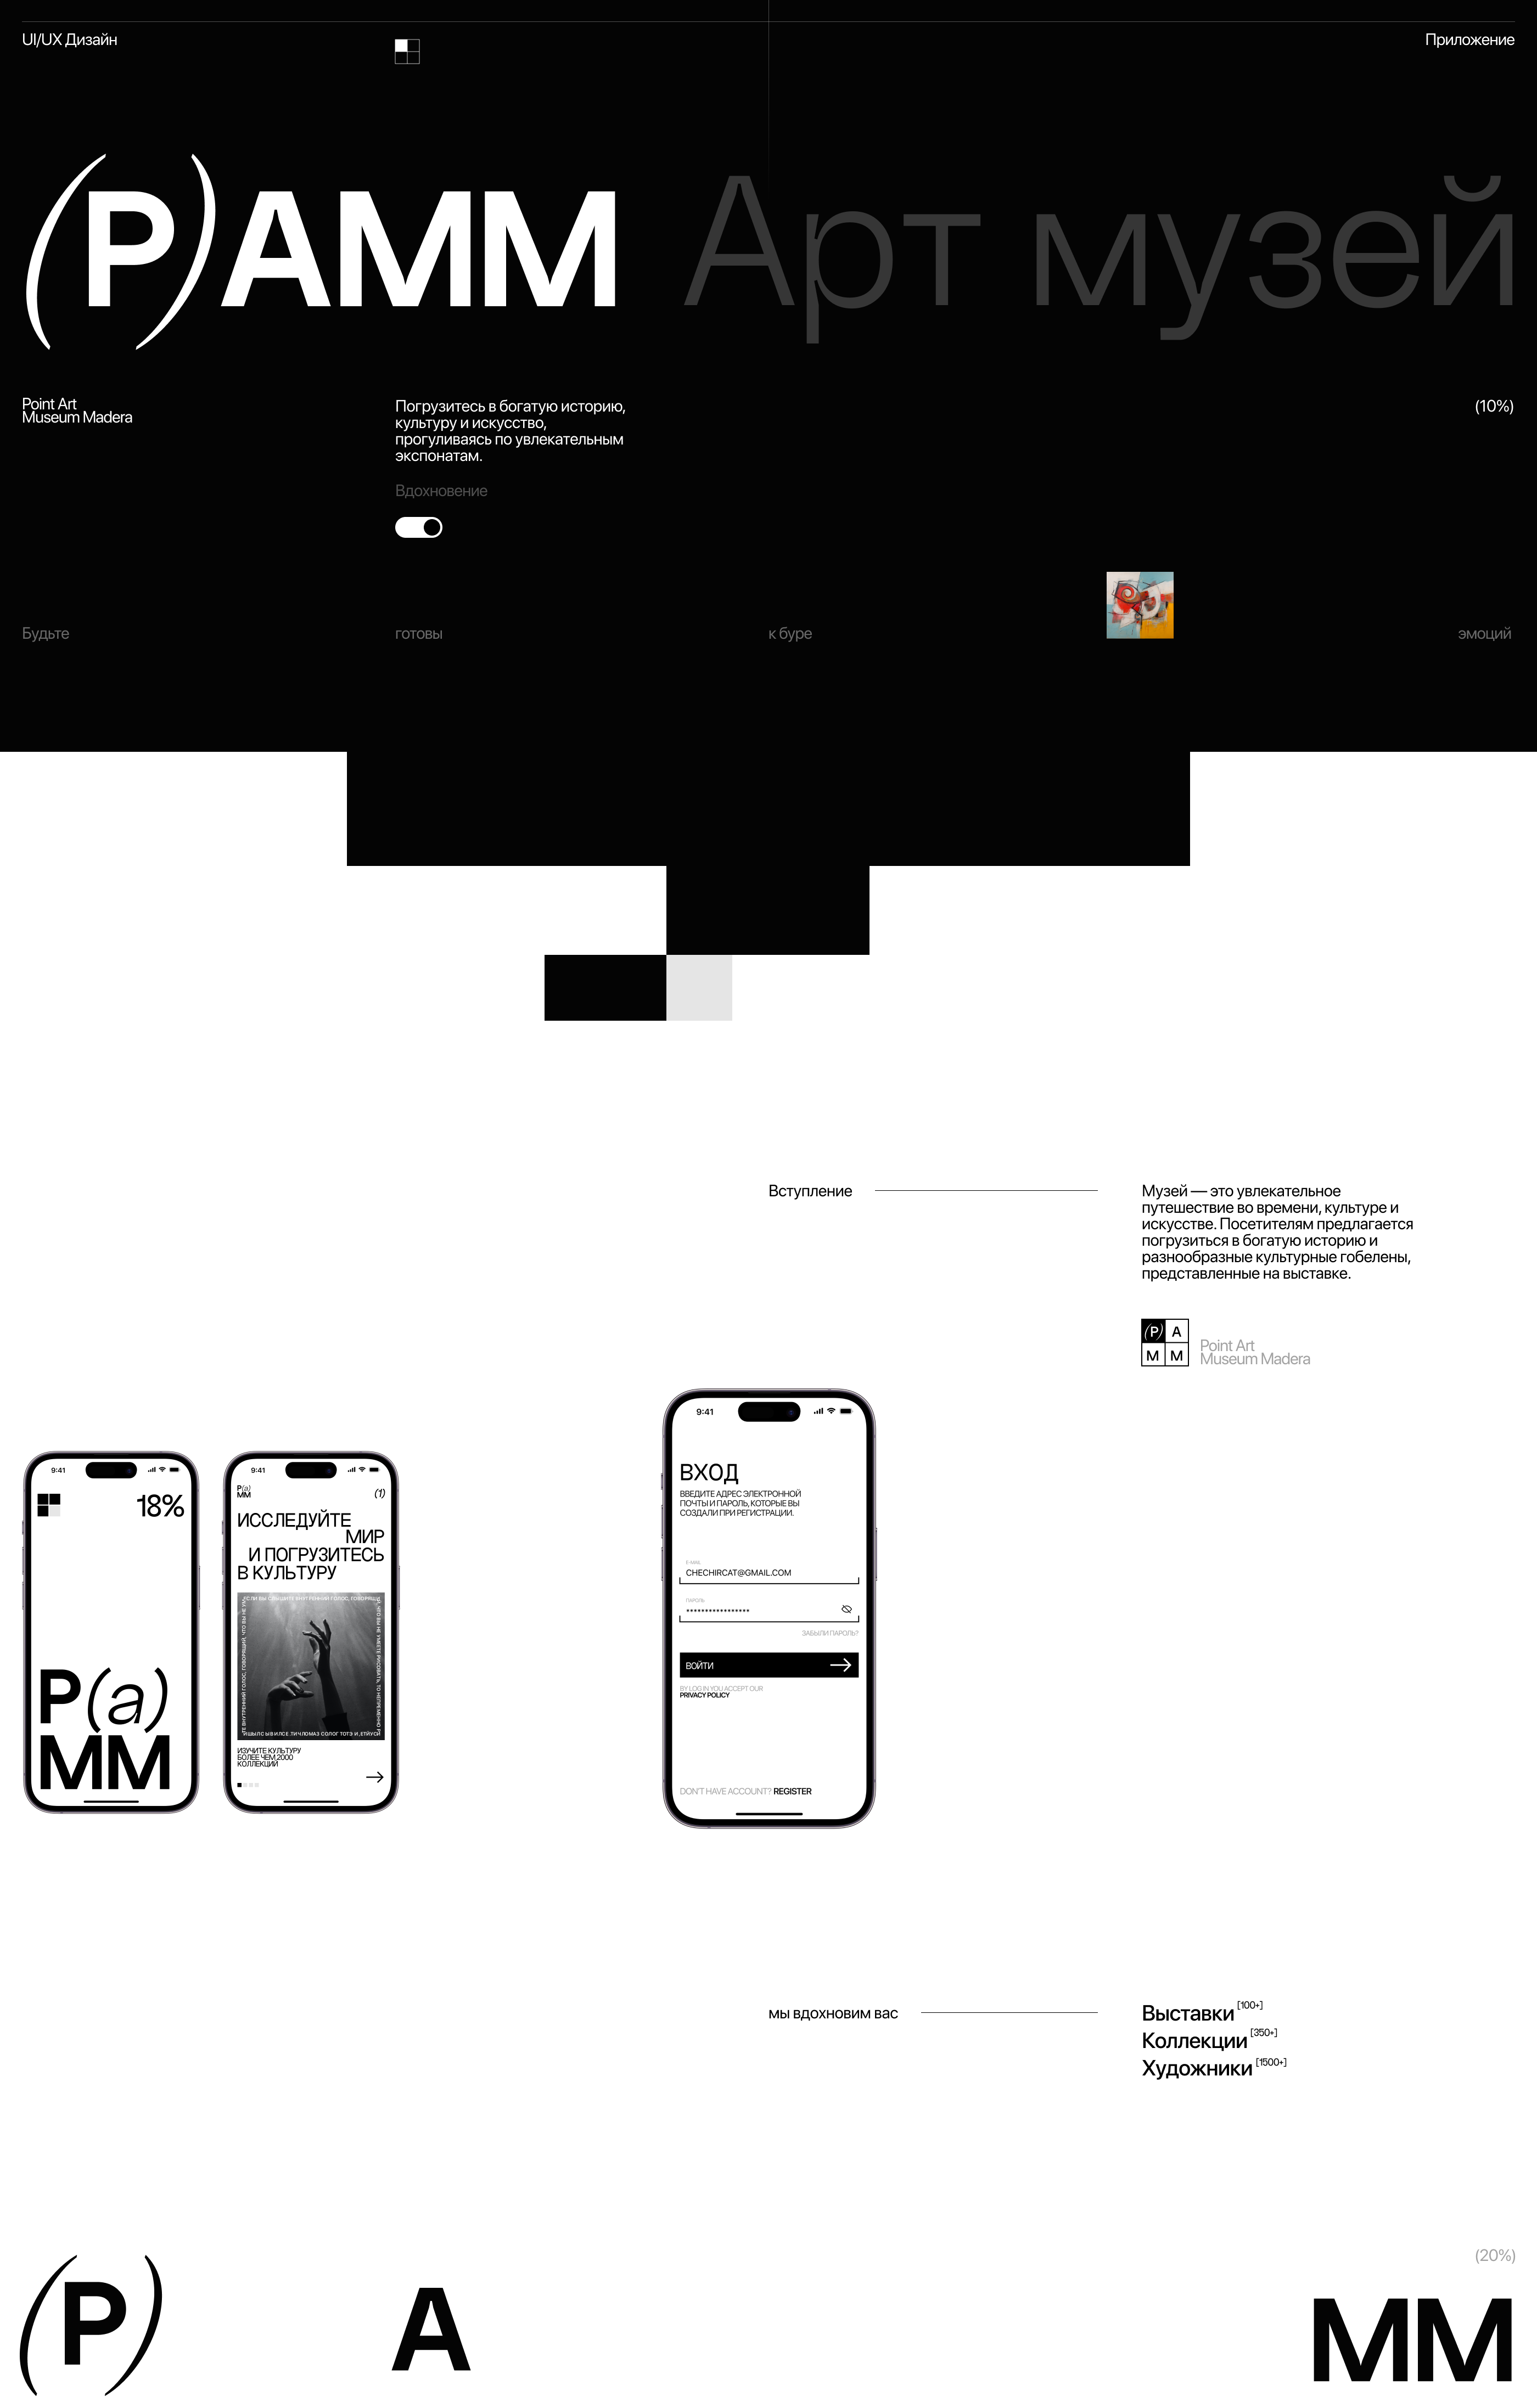 PAMM — Изображение №1 — Интерфейсы, Брендинг на Dprofile